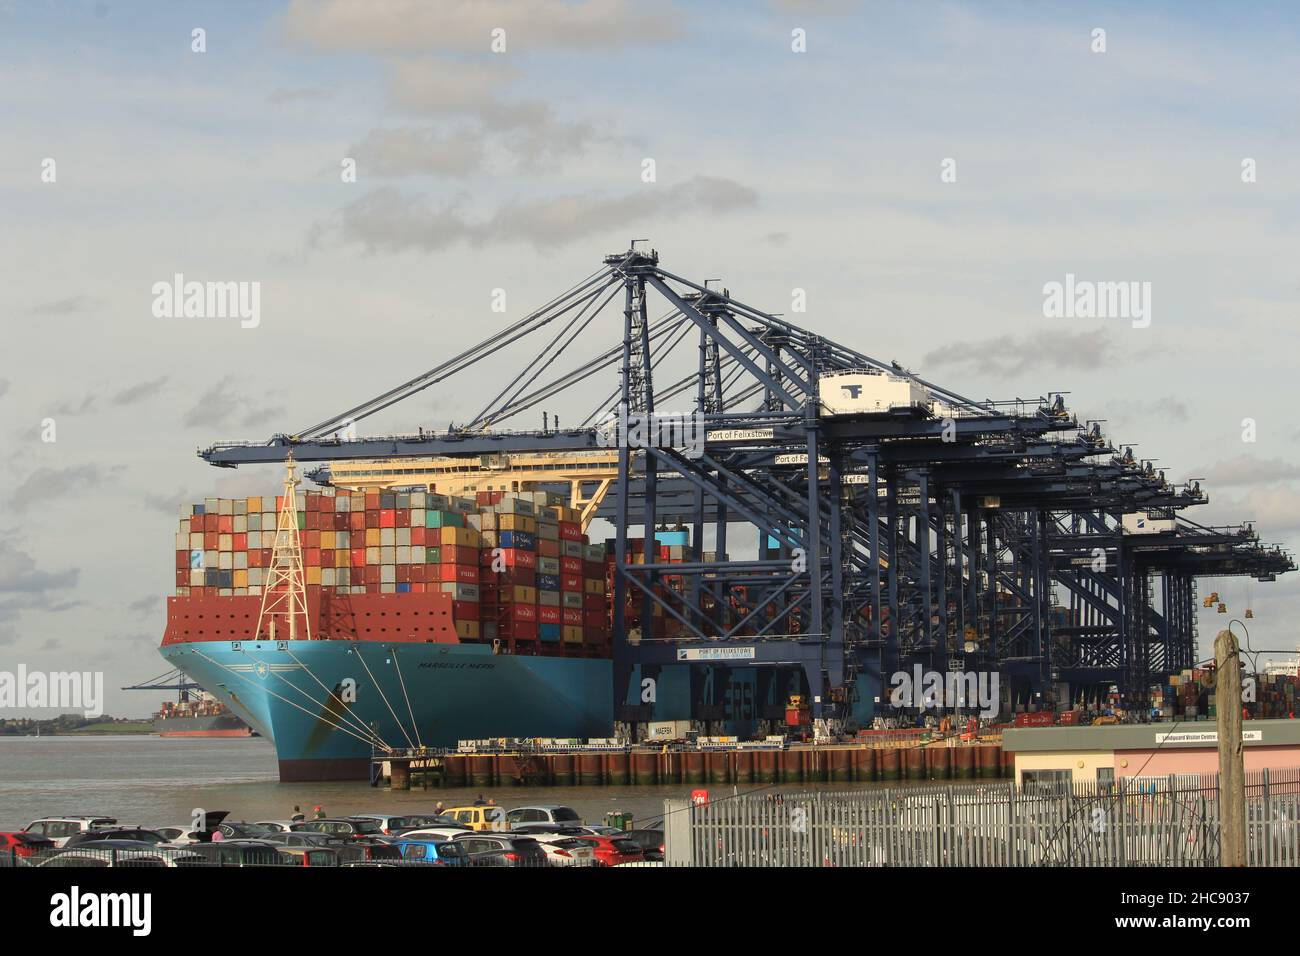 Nach dem Brexit - Verladung eines Containers auf das Marseille Maersk Schiff im britischen Hafen Felixstowe, Suffolk, Großbritannien. Stockfoto